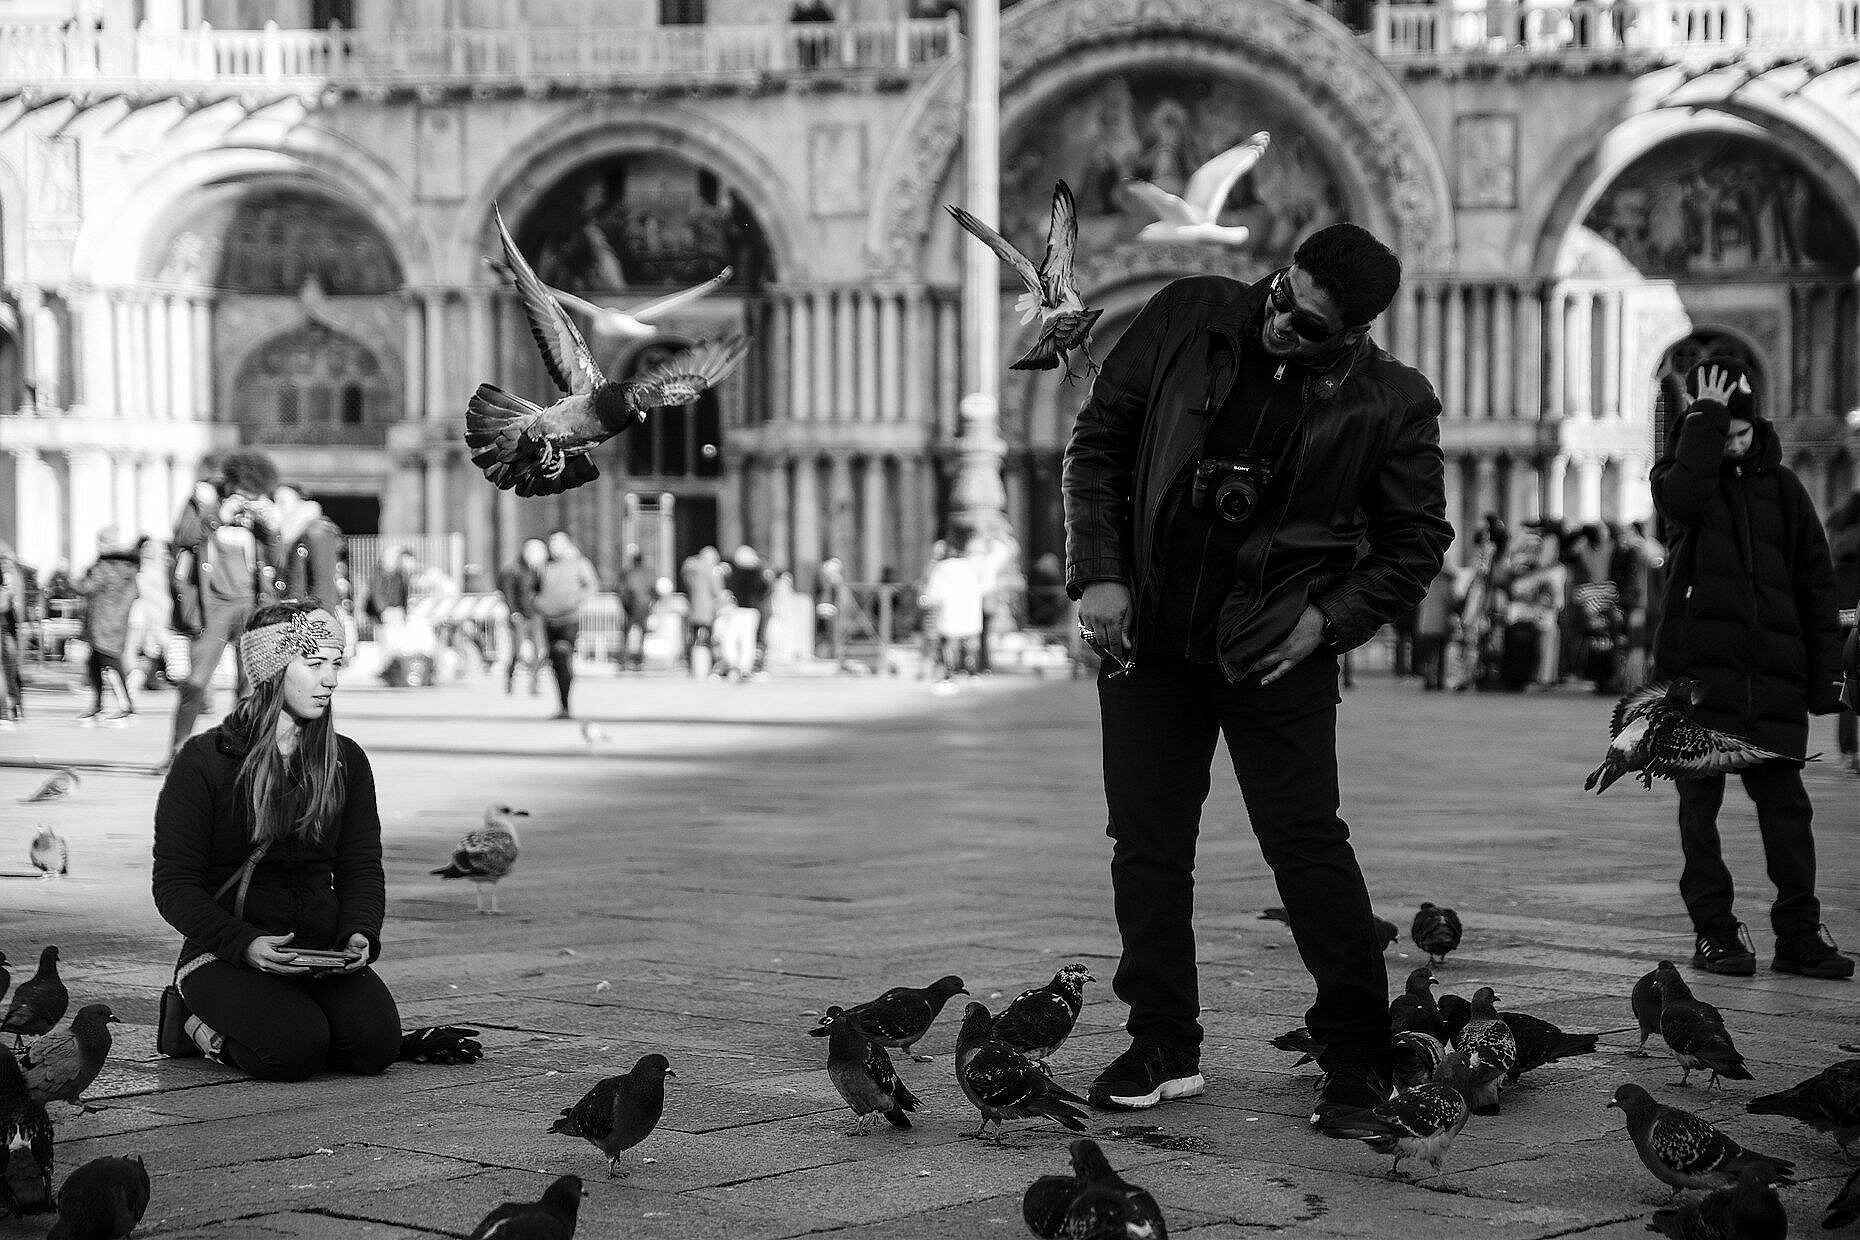 Man evading flying doves in St. Mark's square